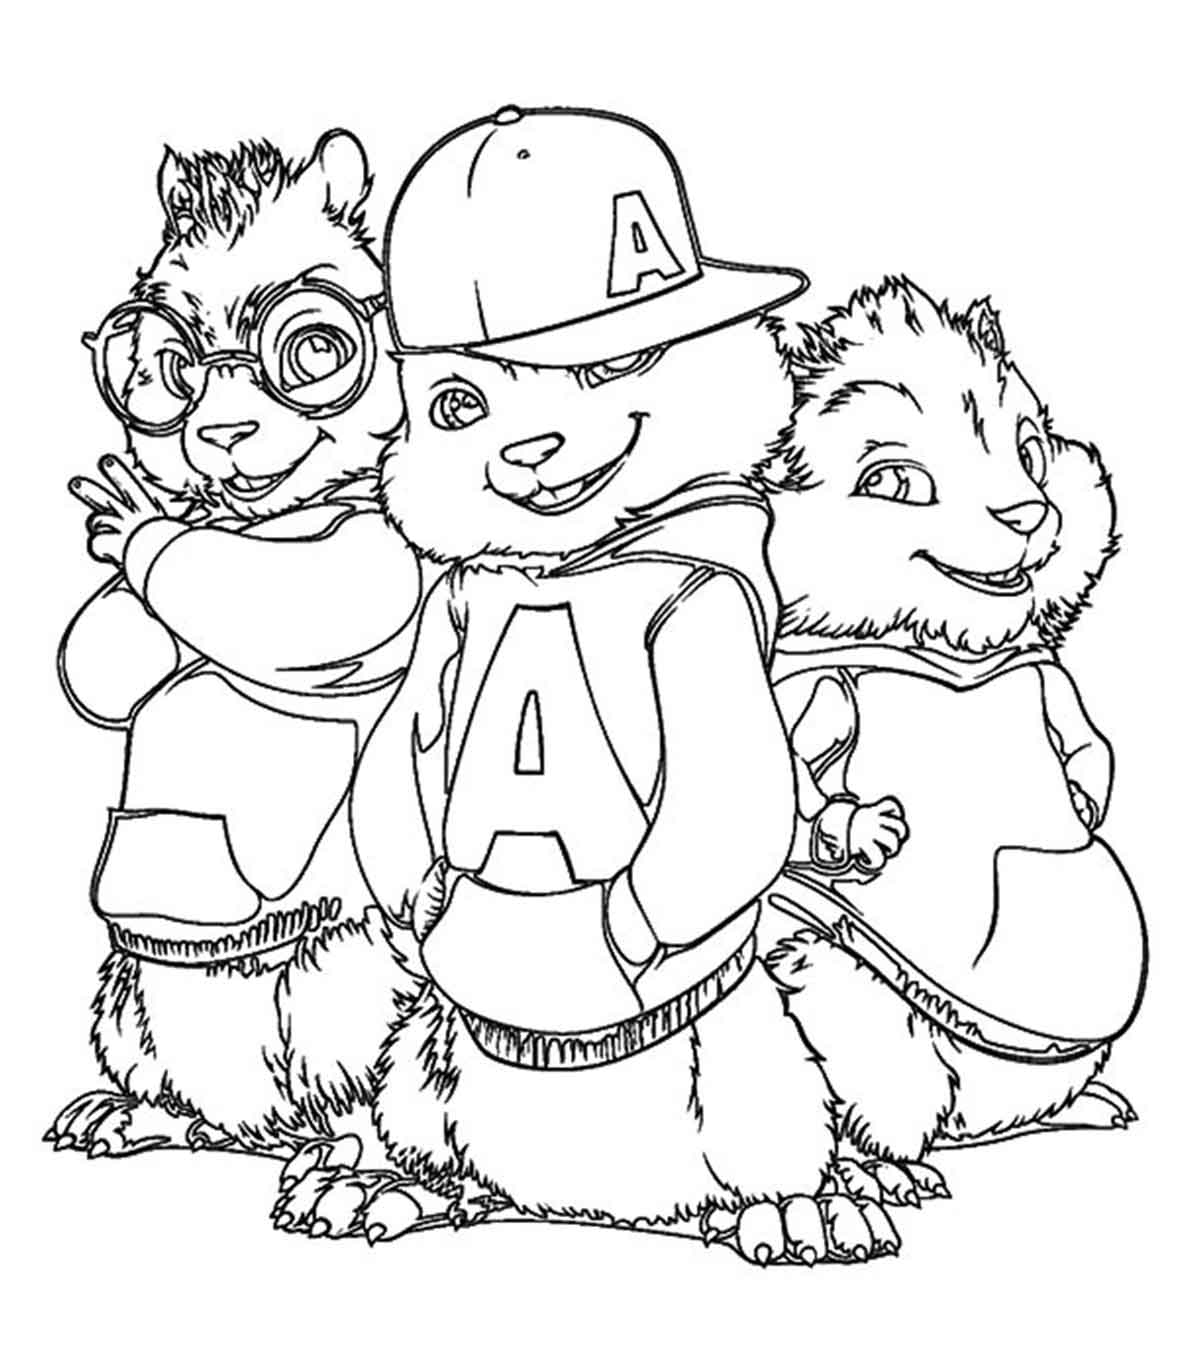 为你的孩子准备的25张可爱的“阿尔文和花栗鼠”涂色页万博体育手机官方网站登录